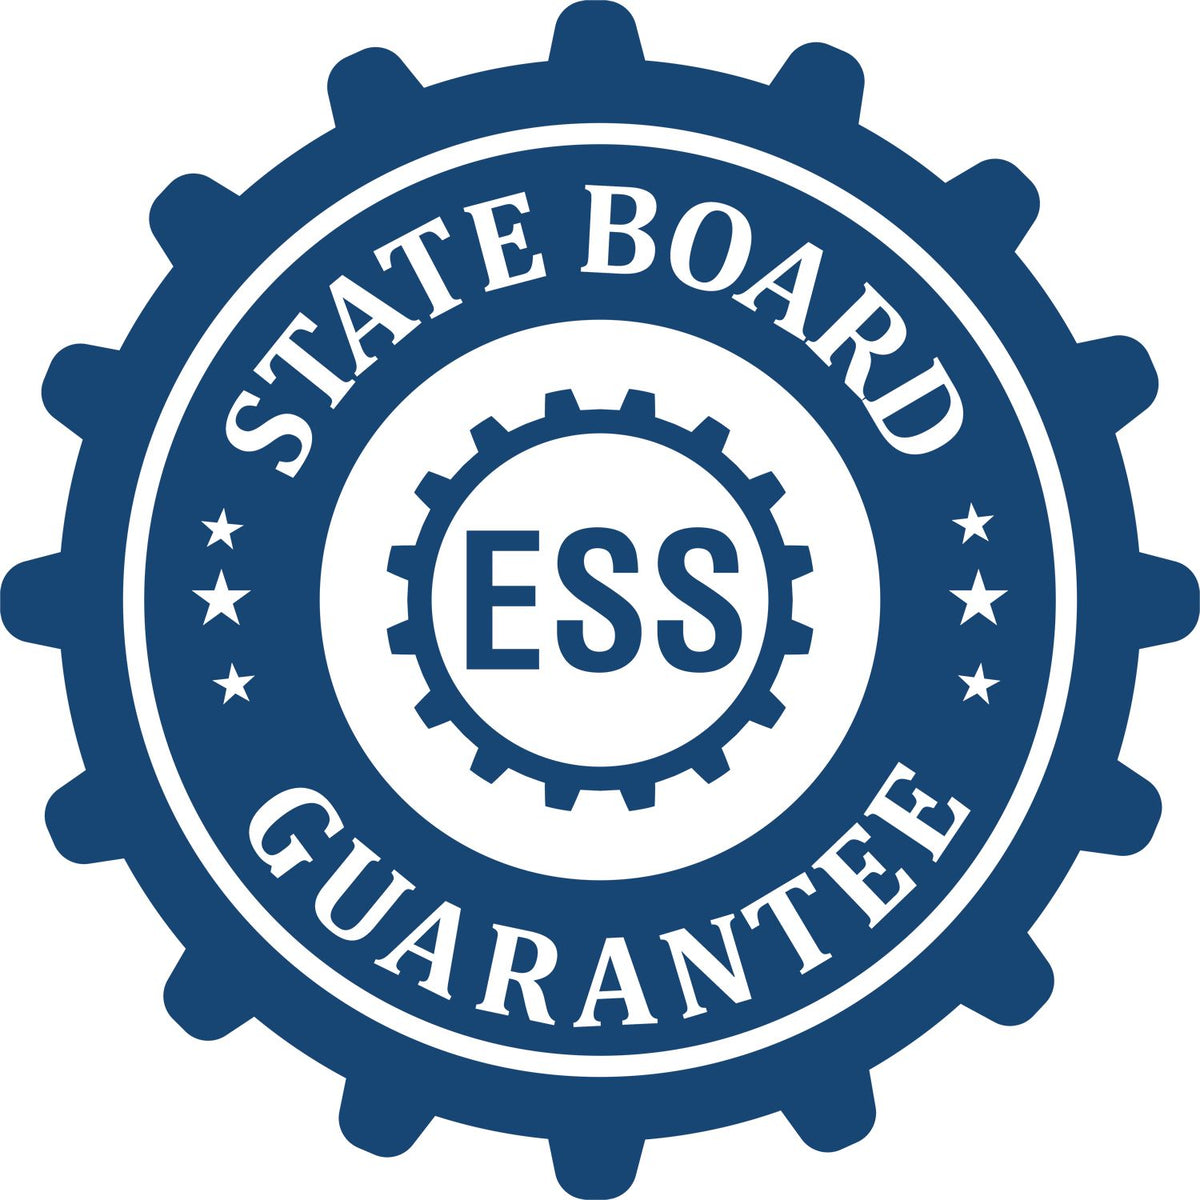 Land Surveyor eSeal Electronic Image Stamp of Seal 3008LS State Board Guarantee